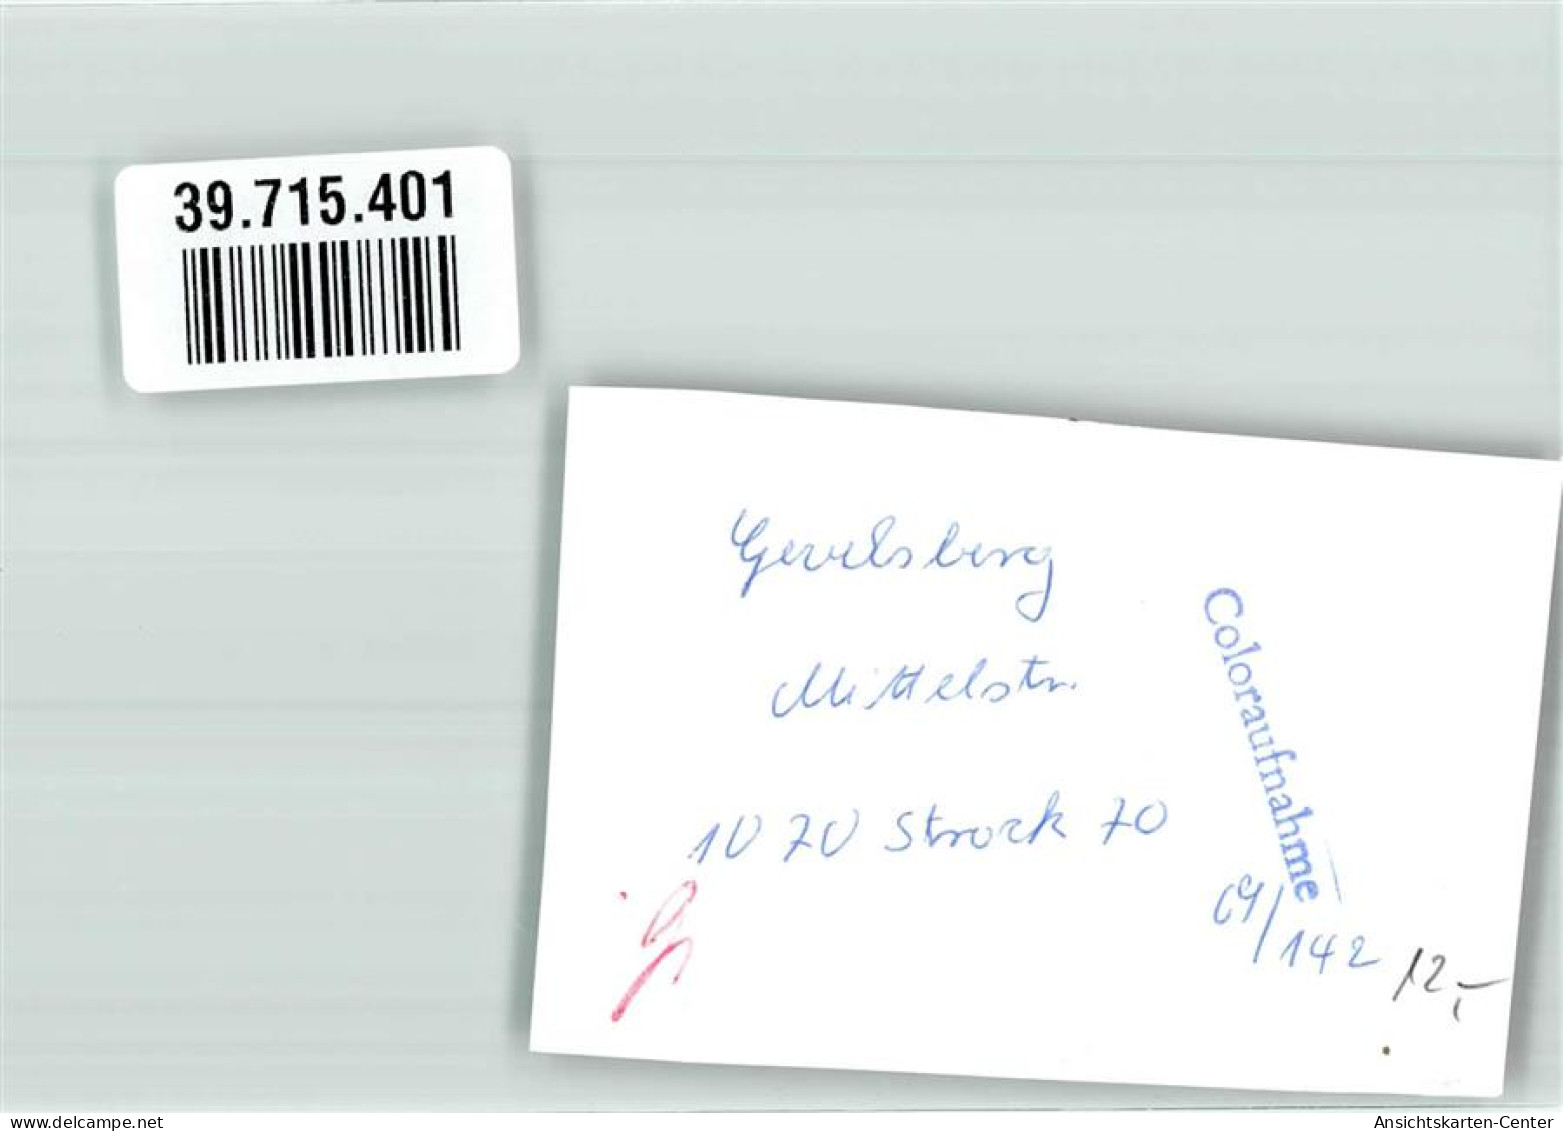 39715401 - Gevelsberg - Gevelsberg